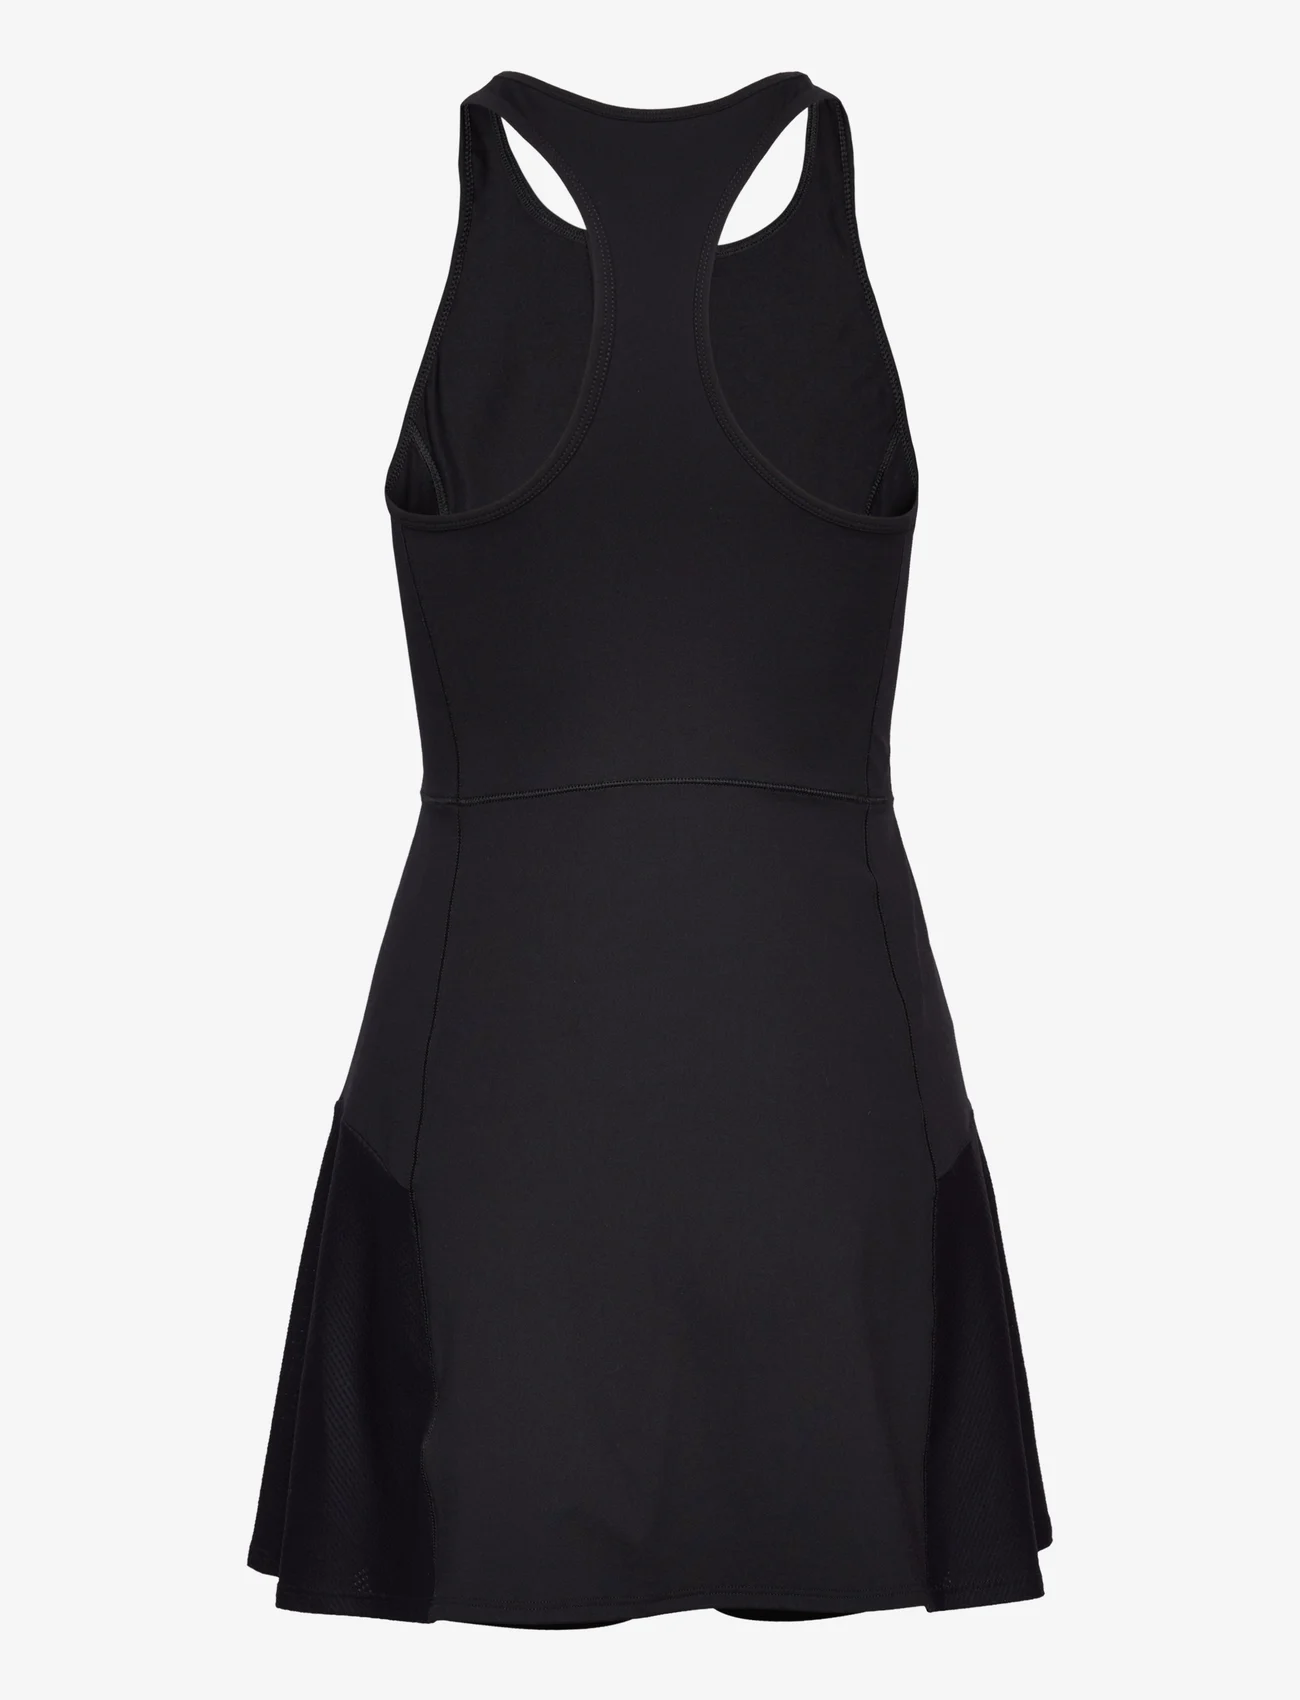 Casall - Court Dress - sports dresses - black - 1